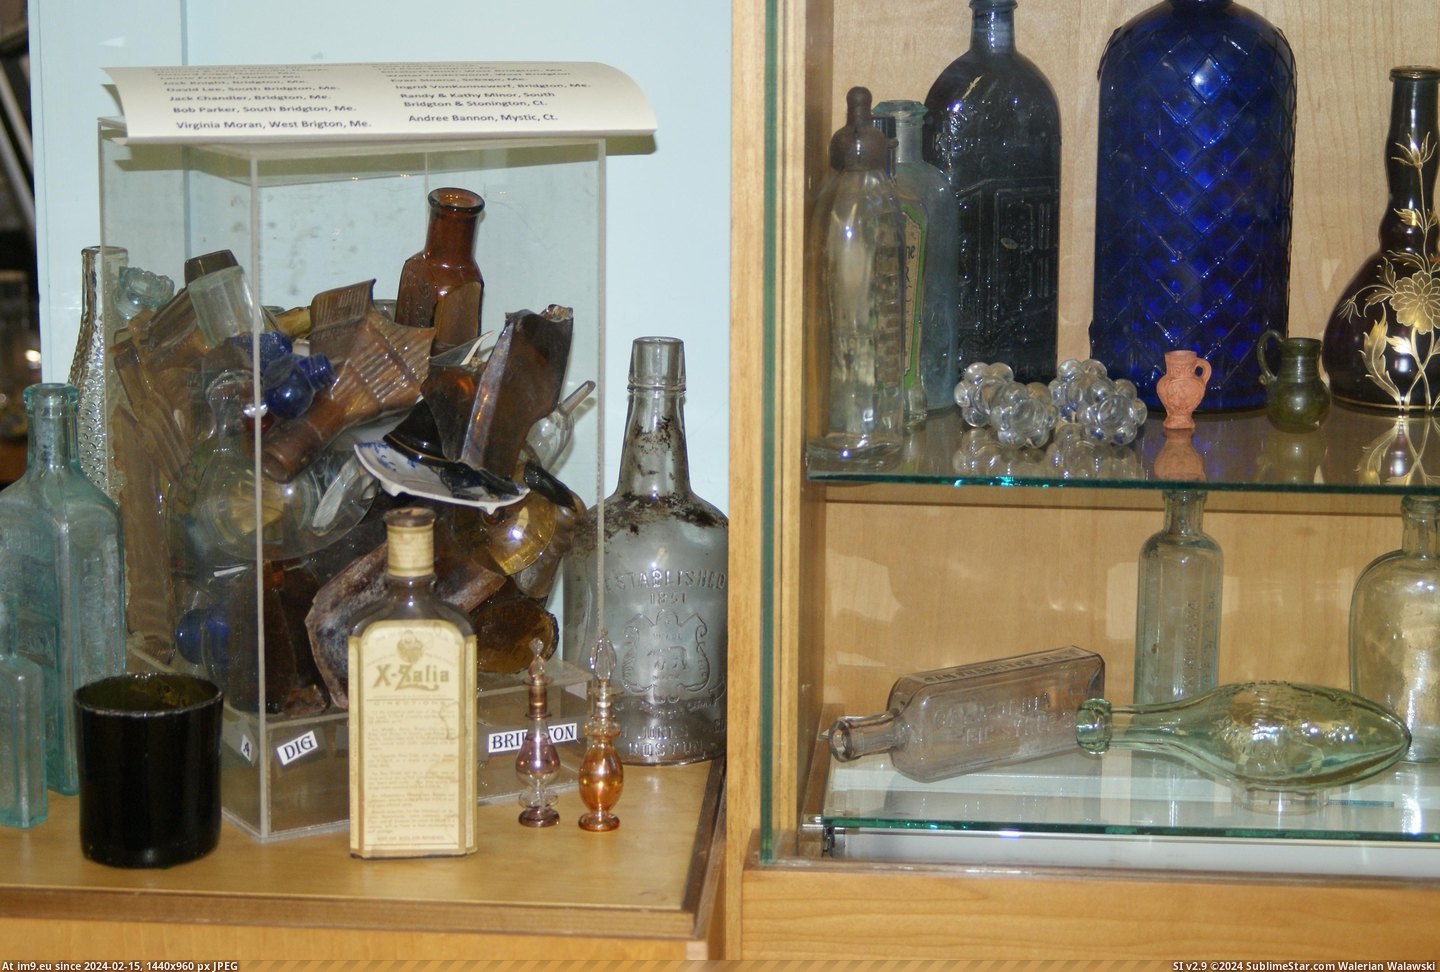 #Museum #Maine #Naples #Bottle MAINE BOTTLE MUSEUM NAPLES (14) Pic. (Image of album MAINE BOTTLE MUSEUM))